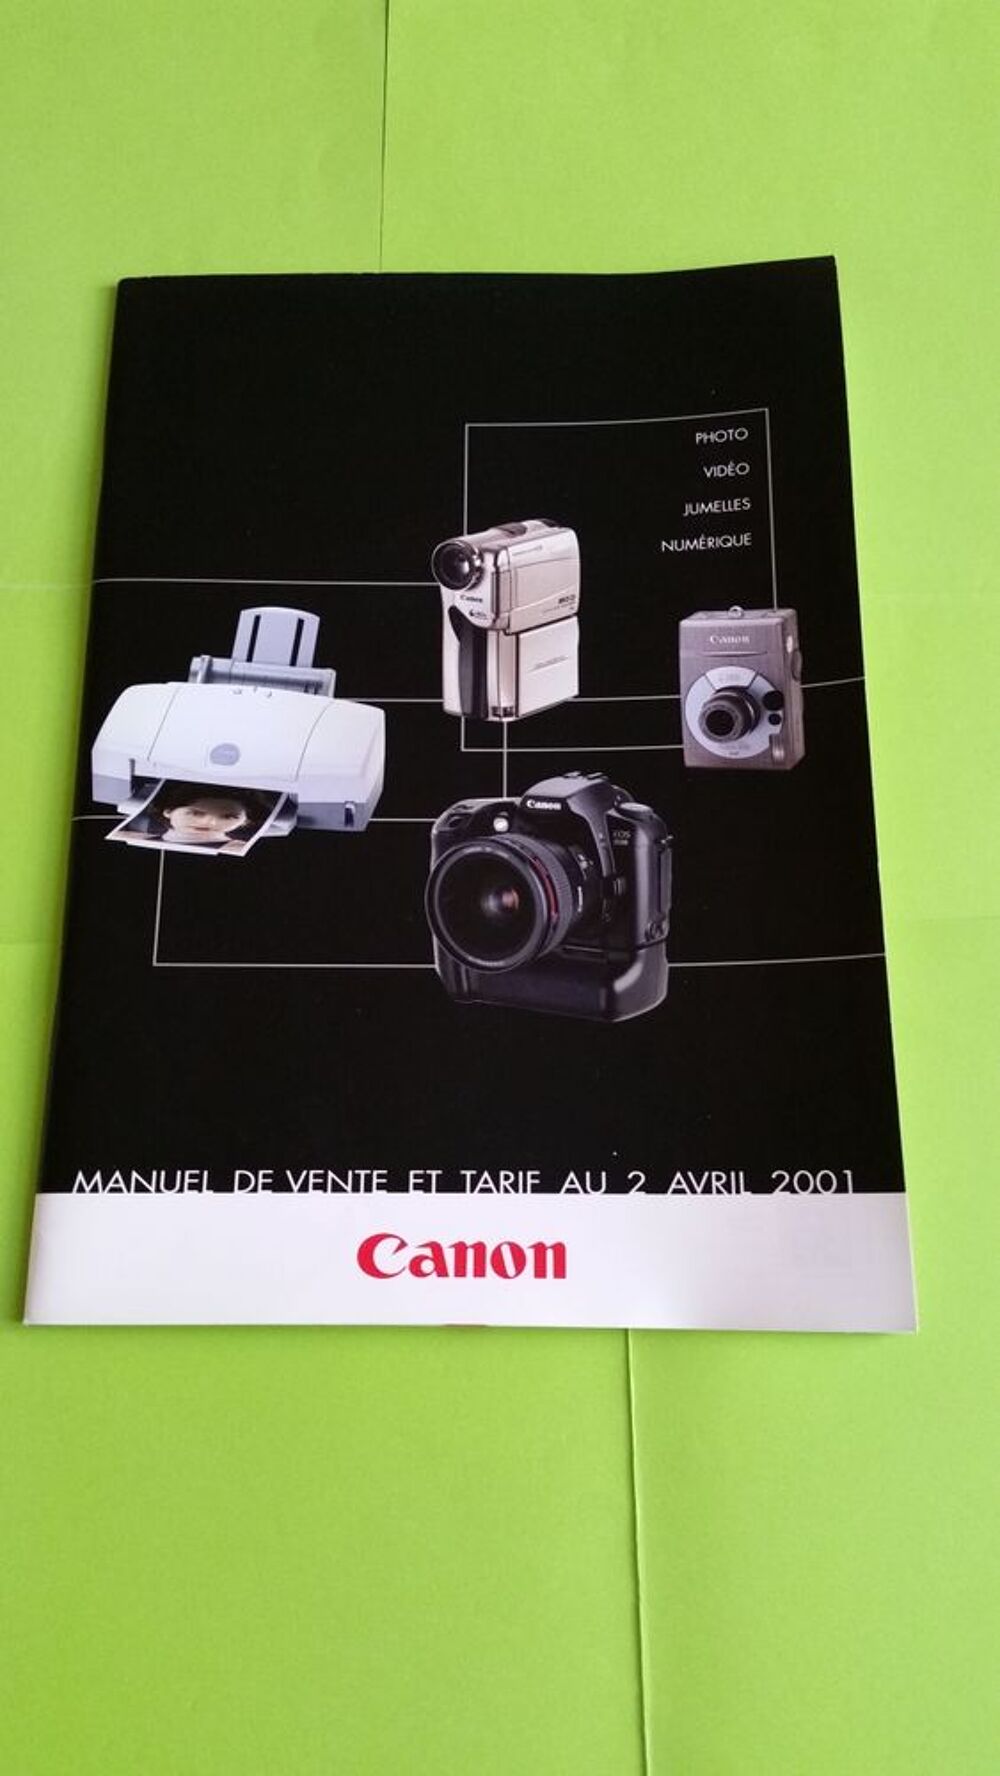 CANON Photos/Video/TV